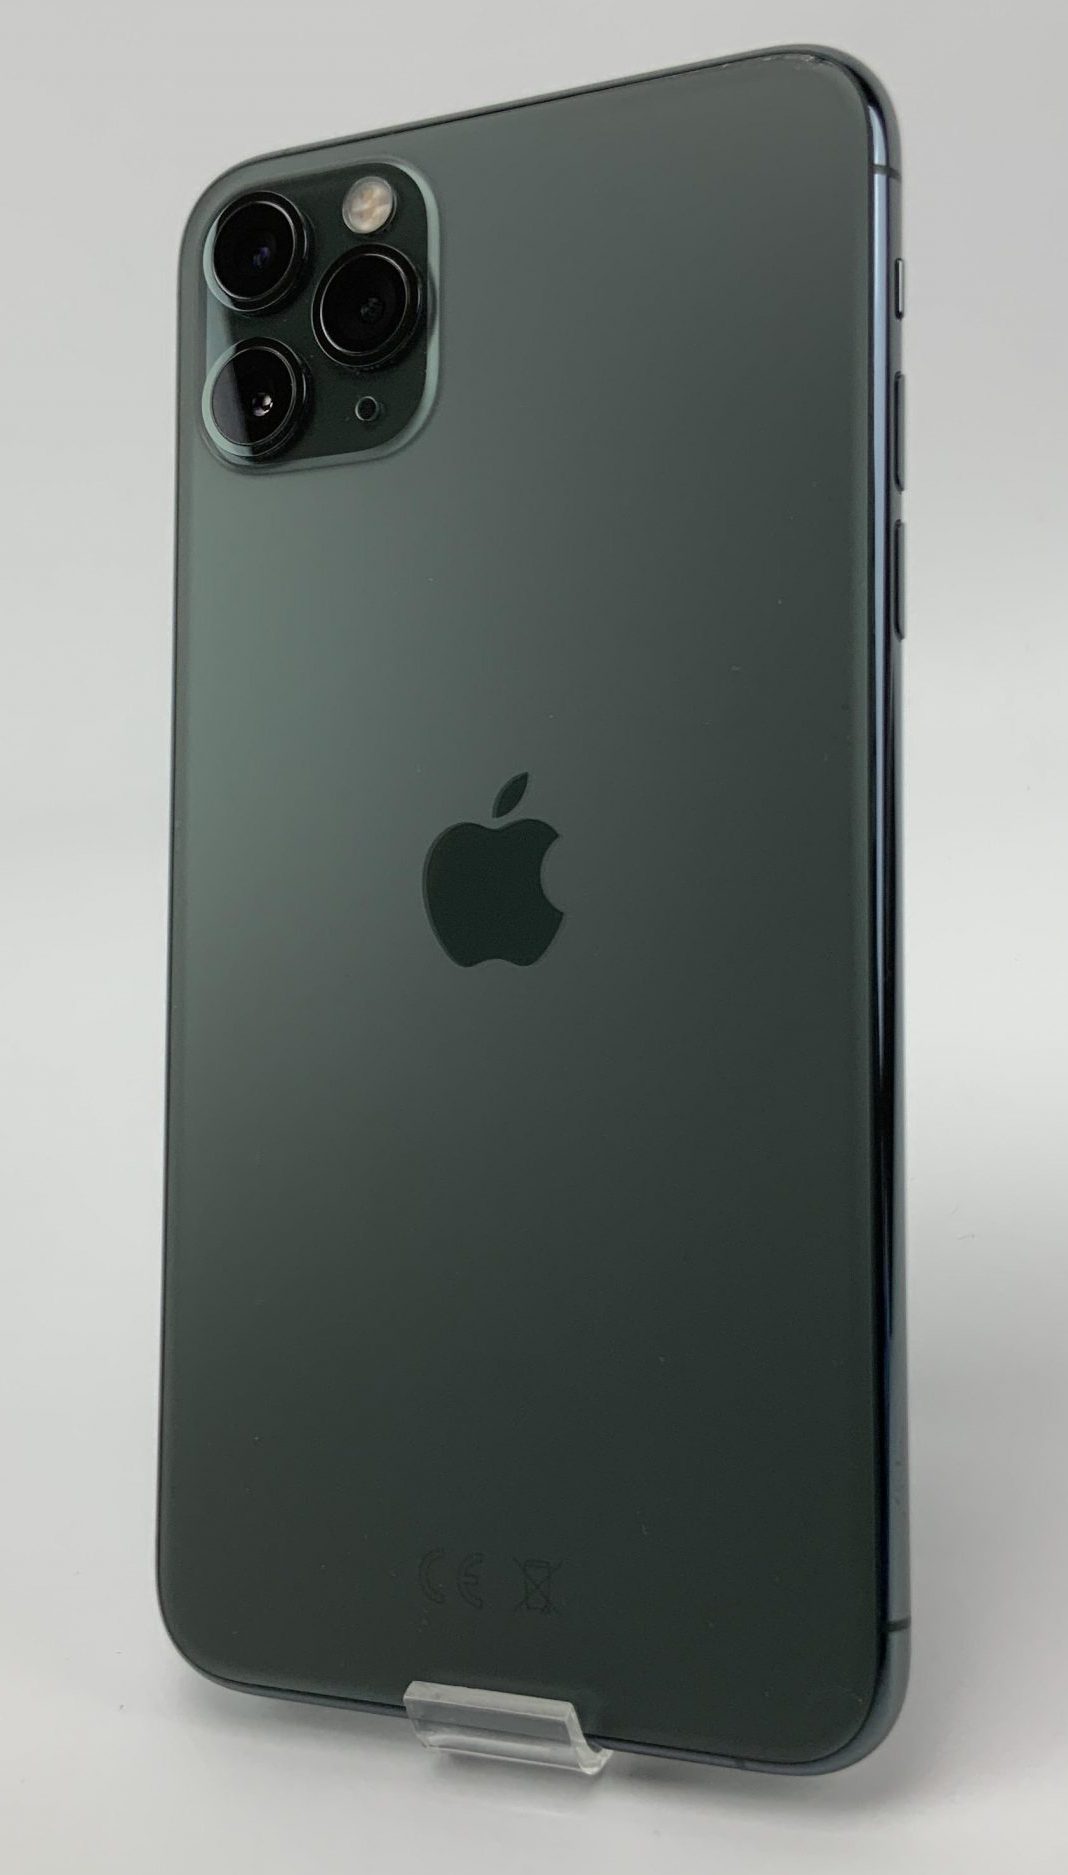 iPhone 11 Pro Max 256GB, 256GB, Midnight Green, bild 2